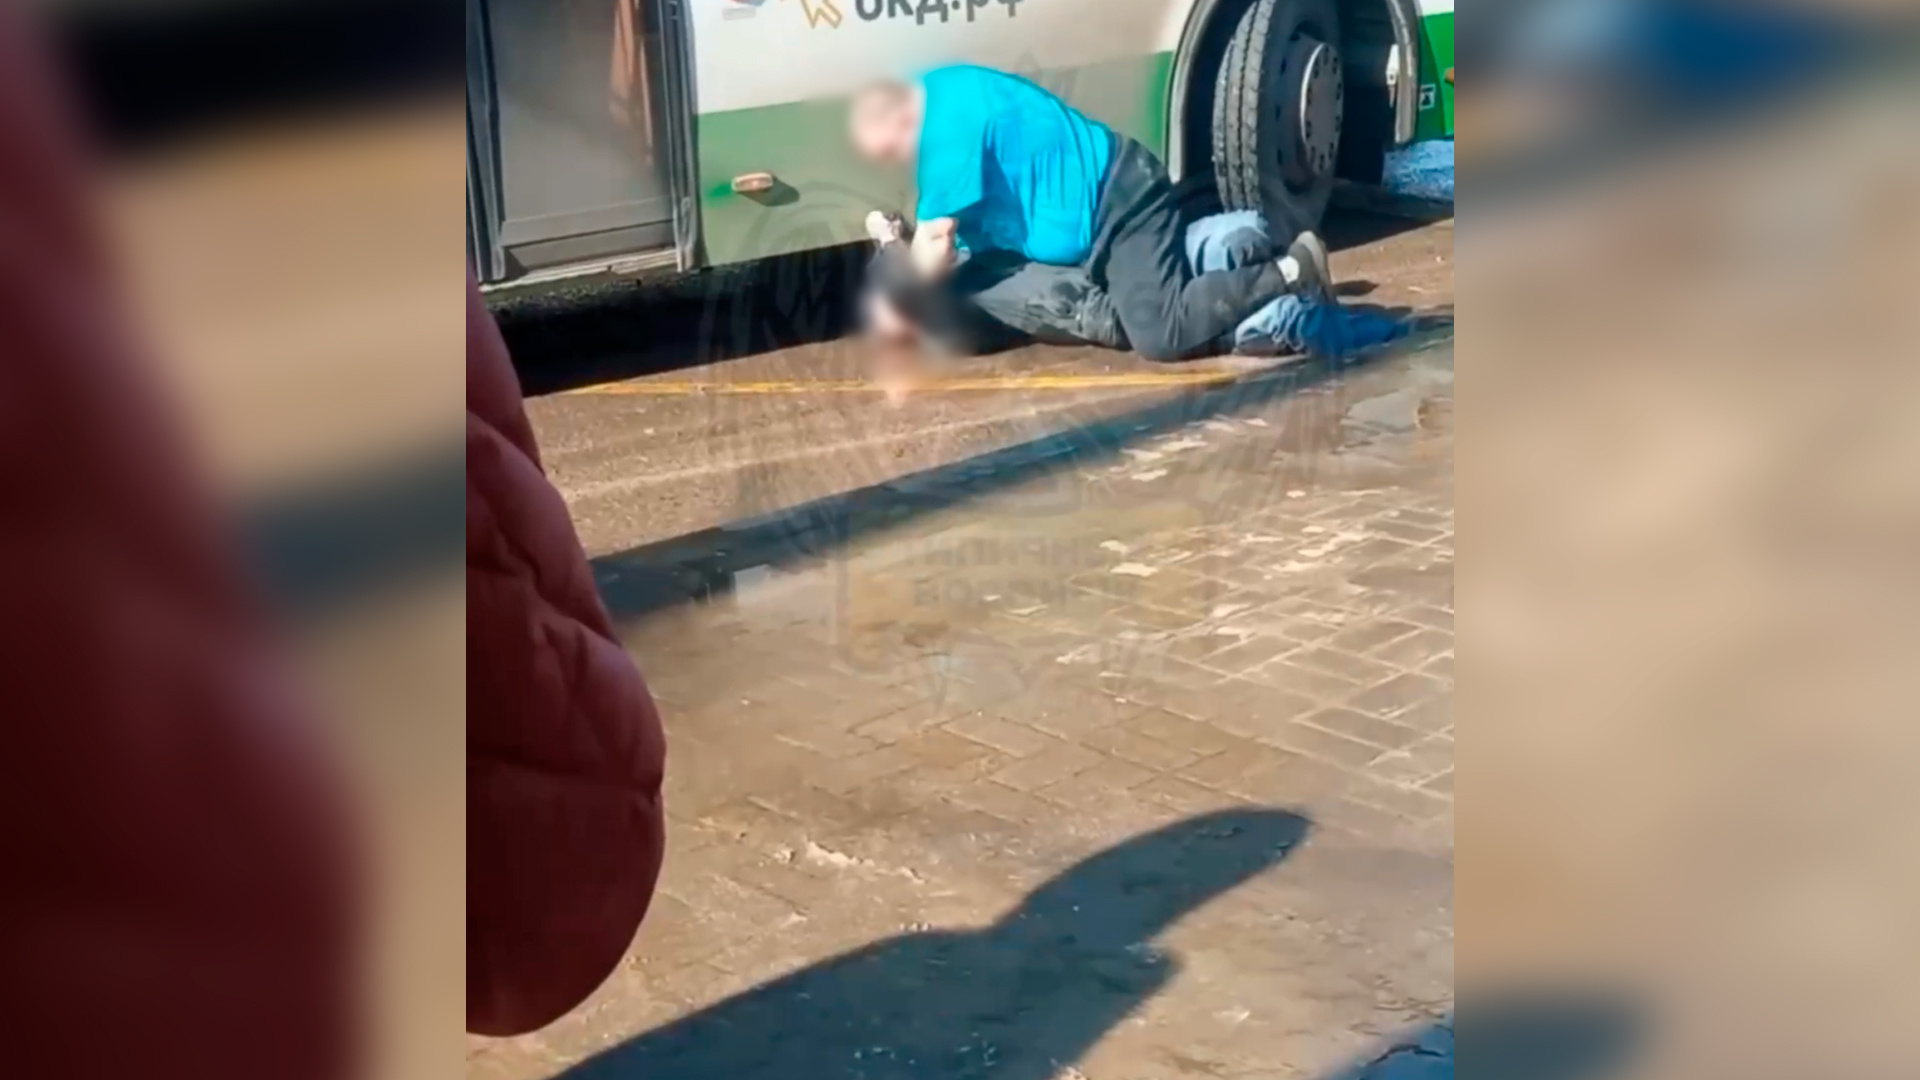 В Воронеже попала на видео очередная драка водителя автобуса и пассажира: маршрутчик душил мужчину на остановке